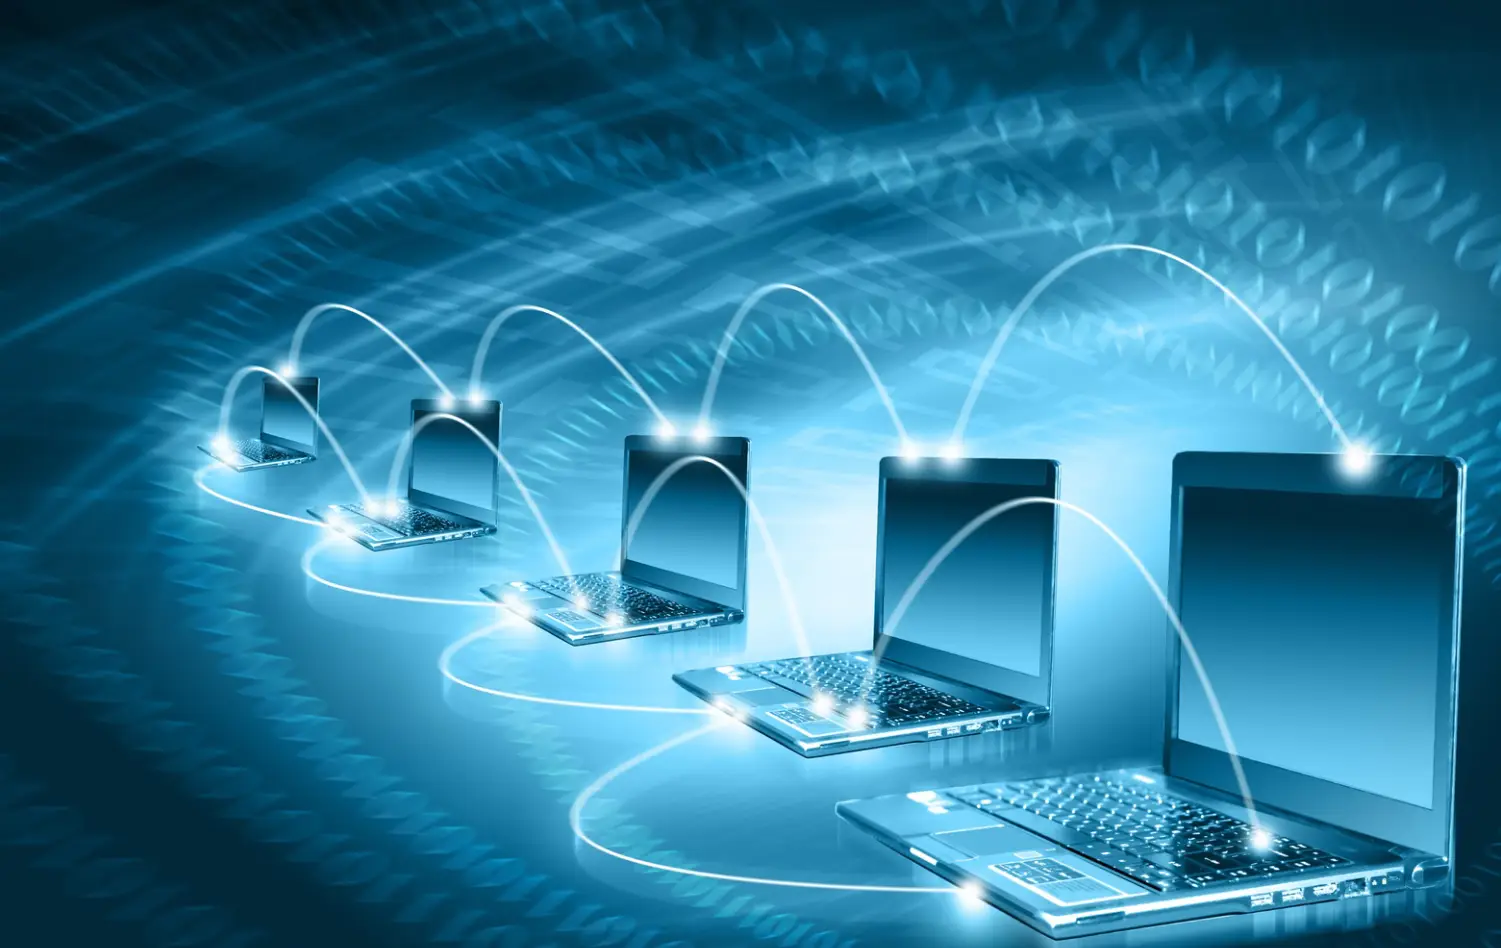 工程师分享武威 5G 网络设备布局经历及技术影响